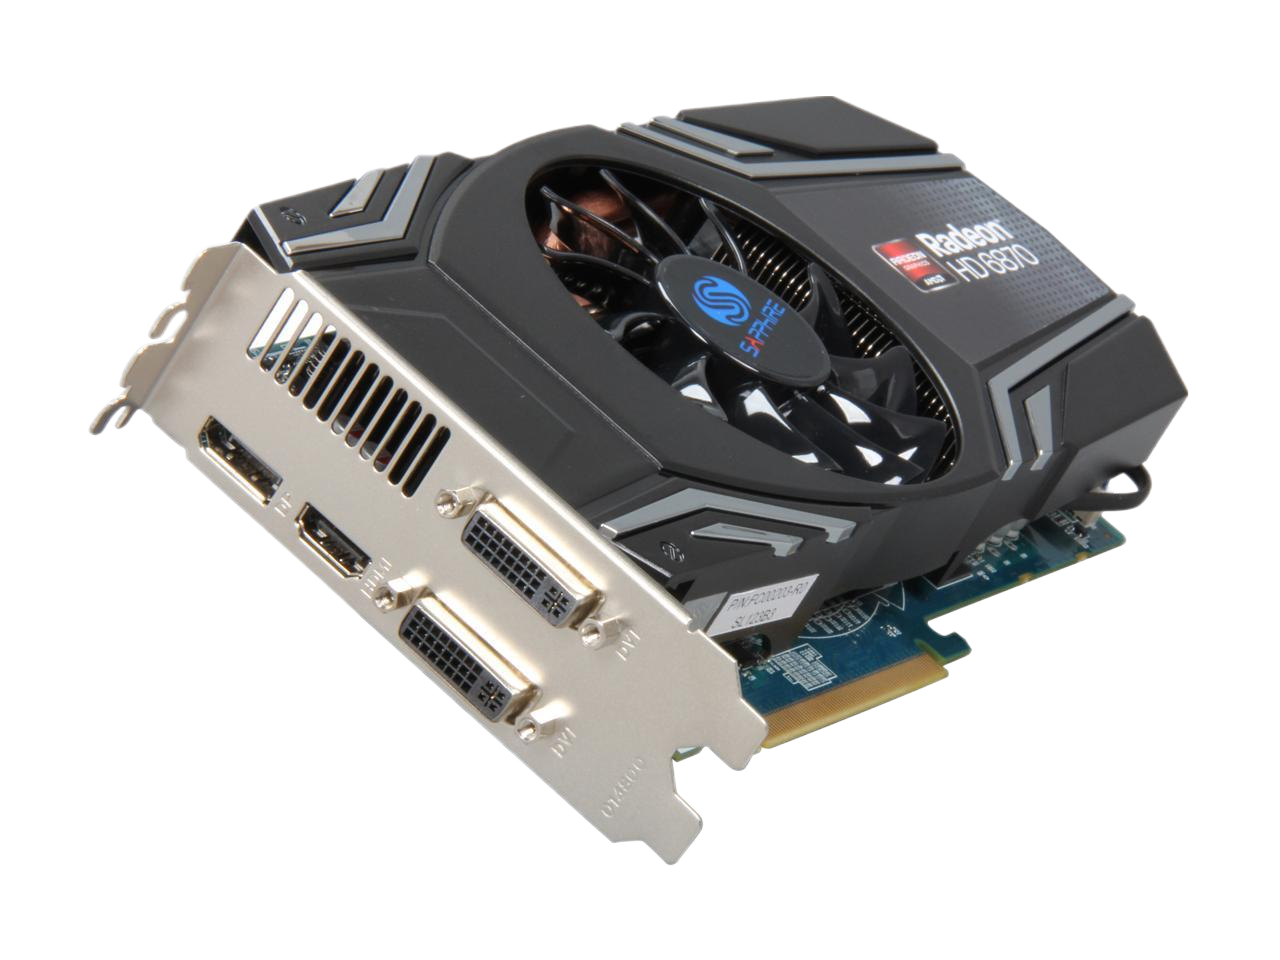 SAPPHIRE AMD Radeon HD 6870 1GB 256-bit GDDR5 PCI Express 2.1 x16 HDCP Ready CrossFireX Support Video Card 100314-3L